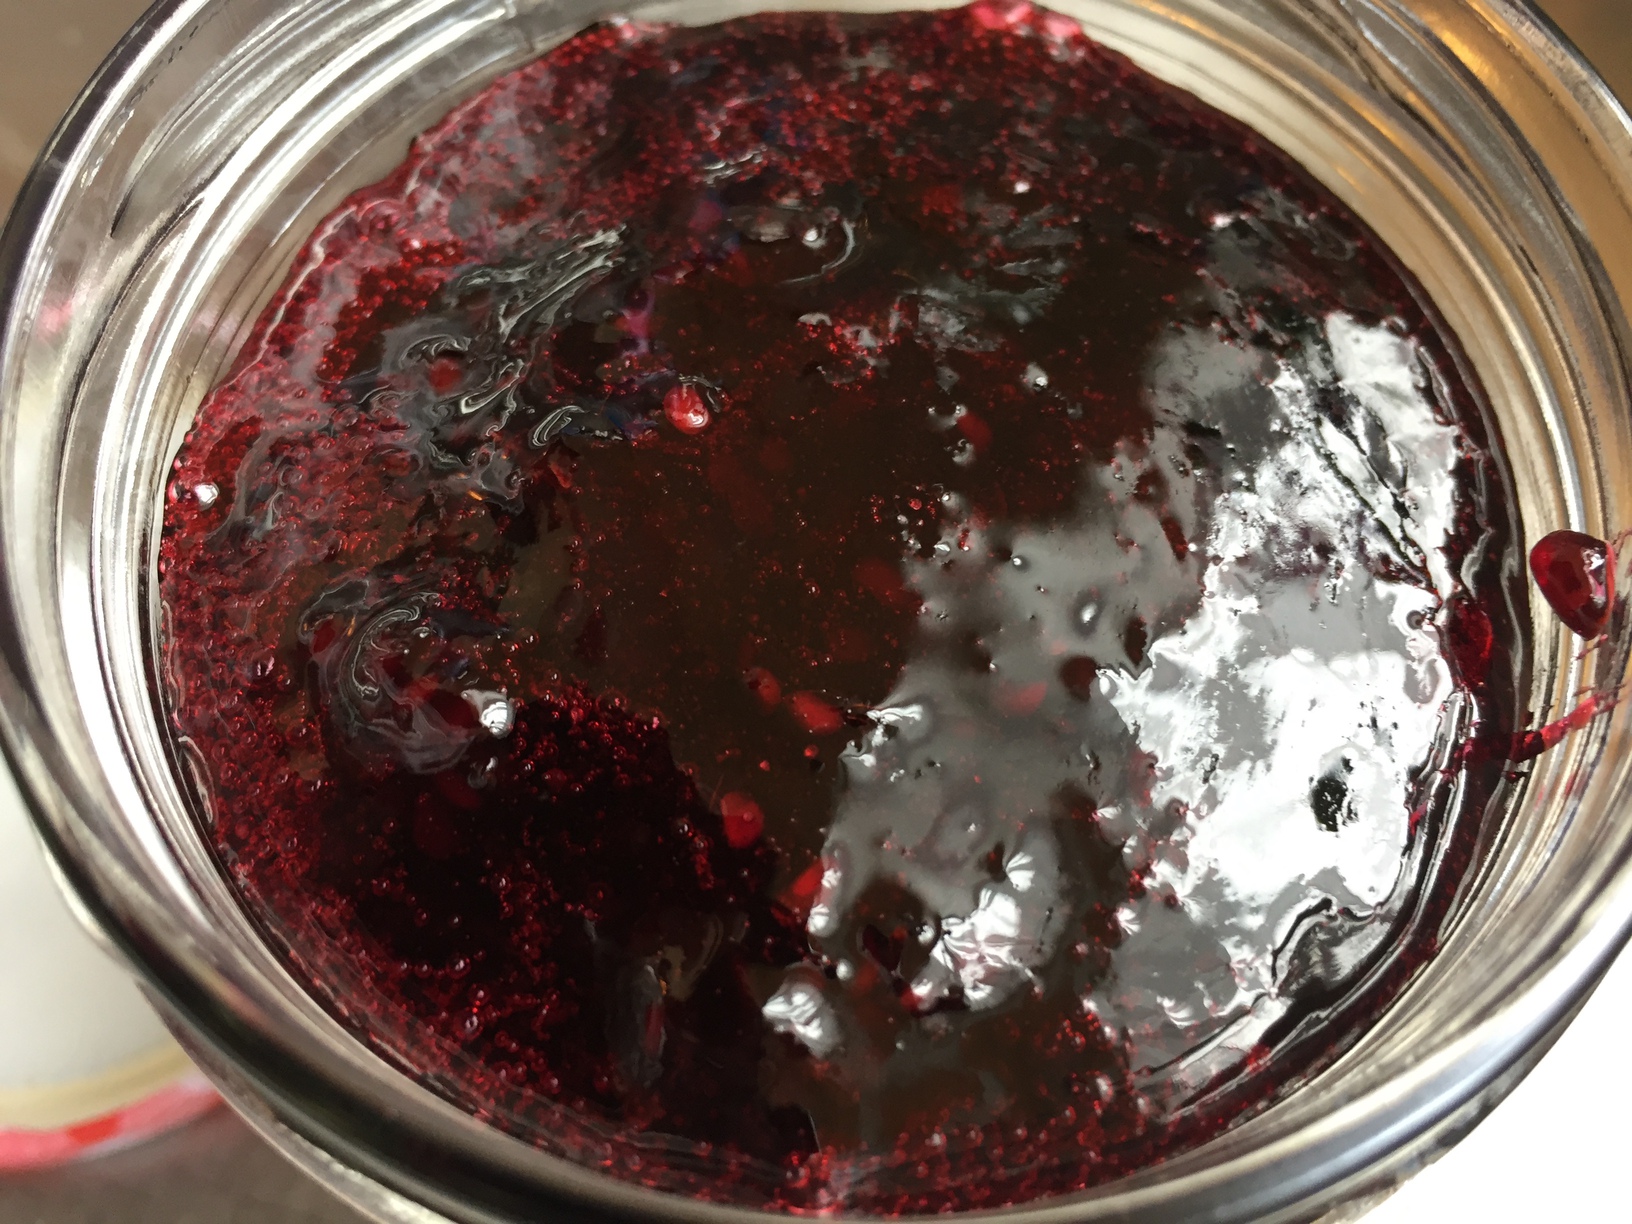 Blackberry jam made